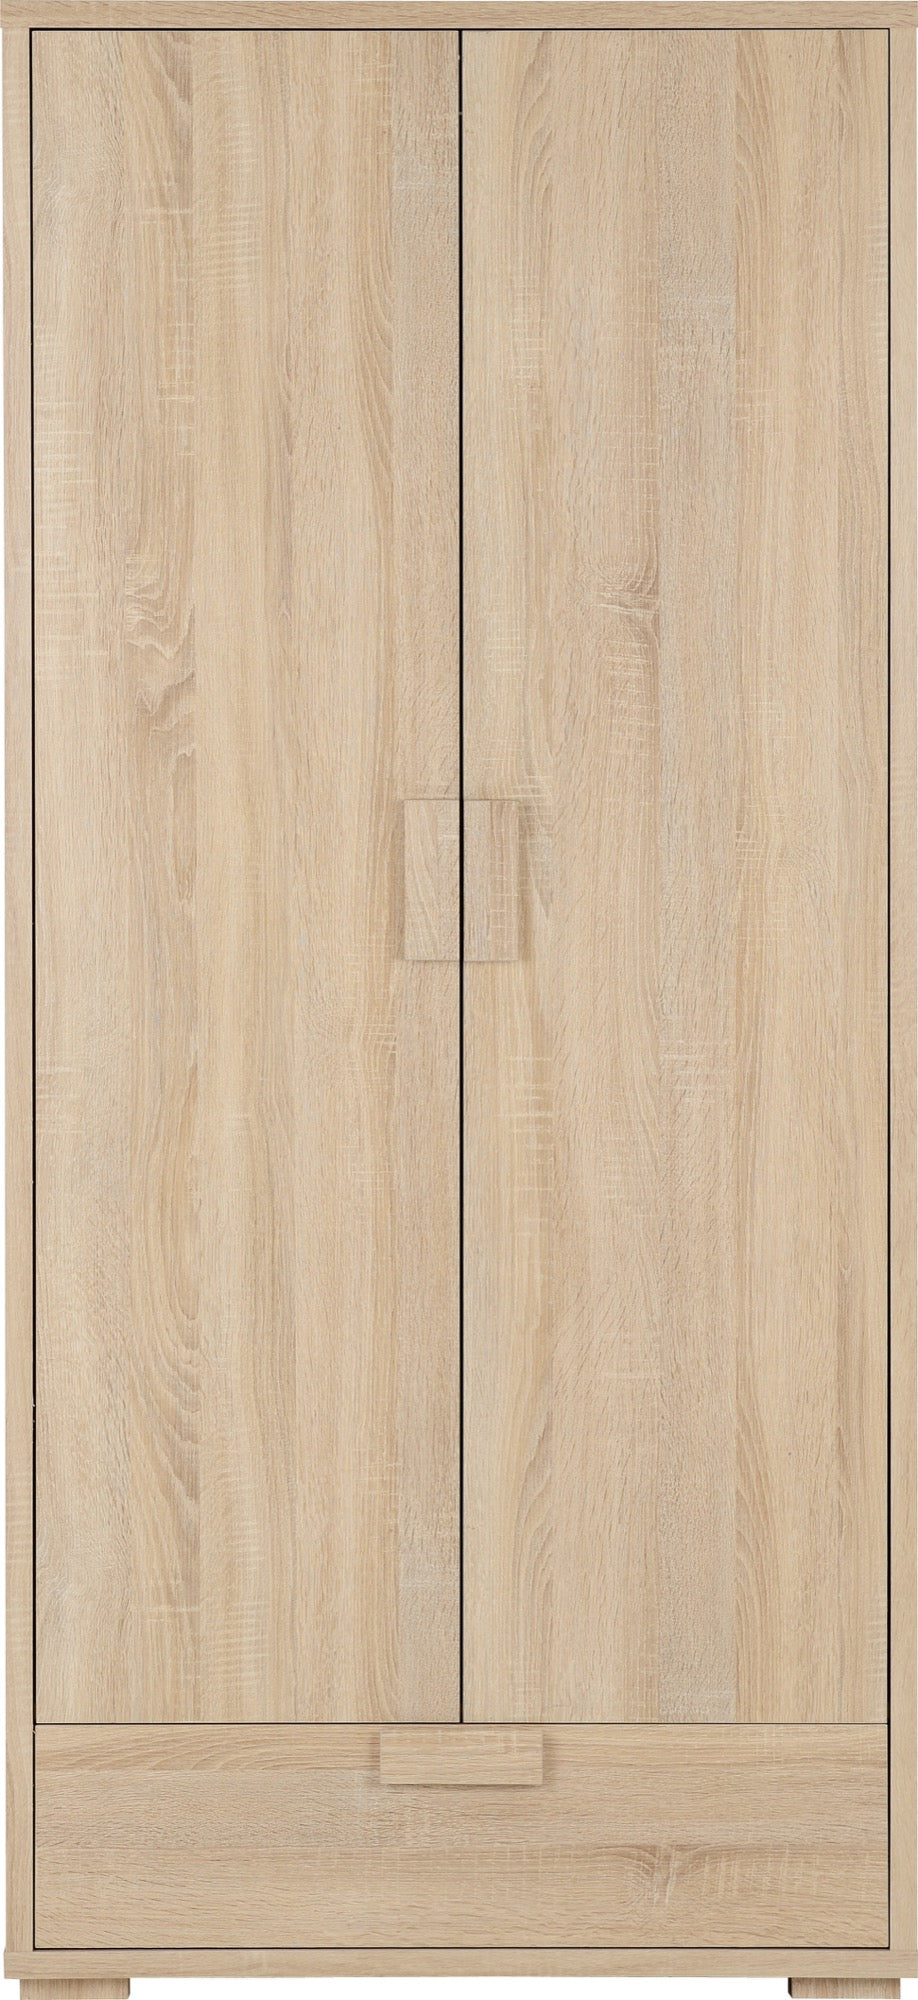 2 door oak wardrobe with drawers